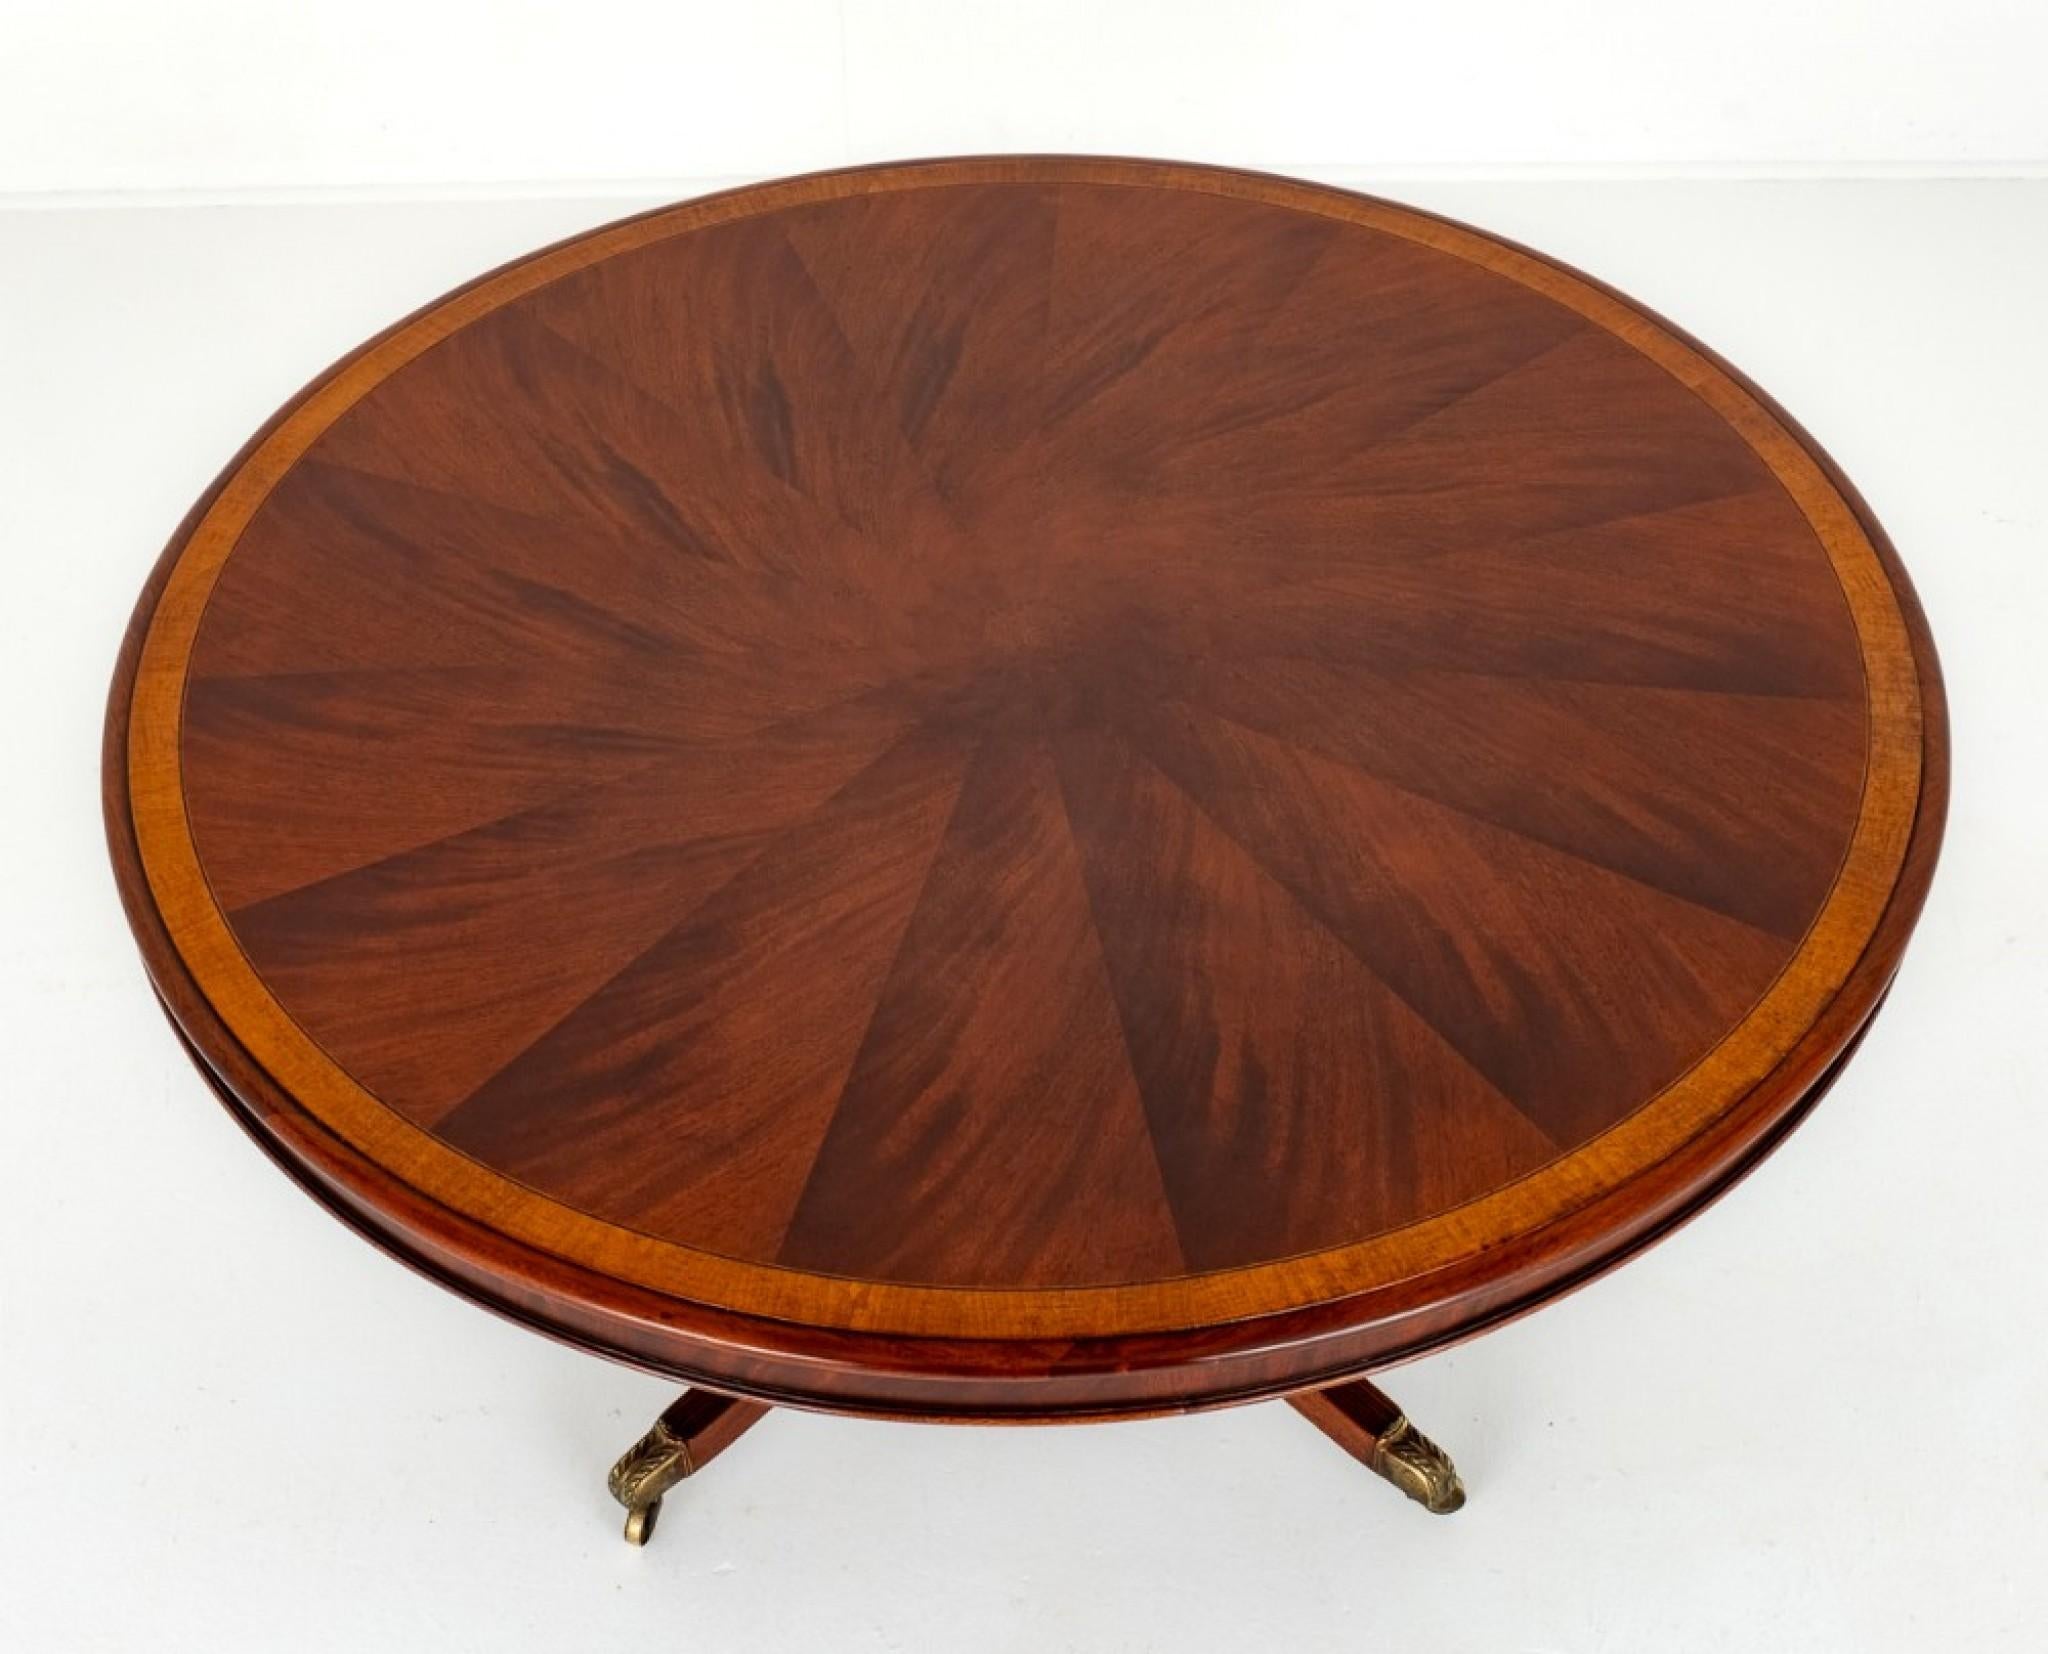 Mahagoni-Mitteltisch im Regency-Stil.
Die Mahagoni-Platte des Tisches hat eine segmentierte Form und ist mit wundervollen Mahagoni-Hölzern, Satinholz-Querbändern und Intarsien aus Ebenholz und Buchsbaum ausgestattet.
CIRCA 1900
Die Basis des Tisches